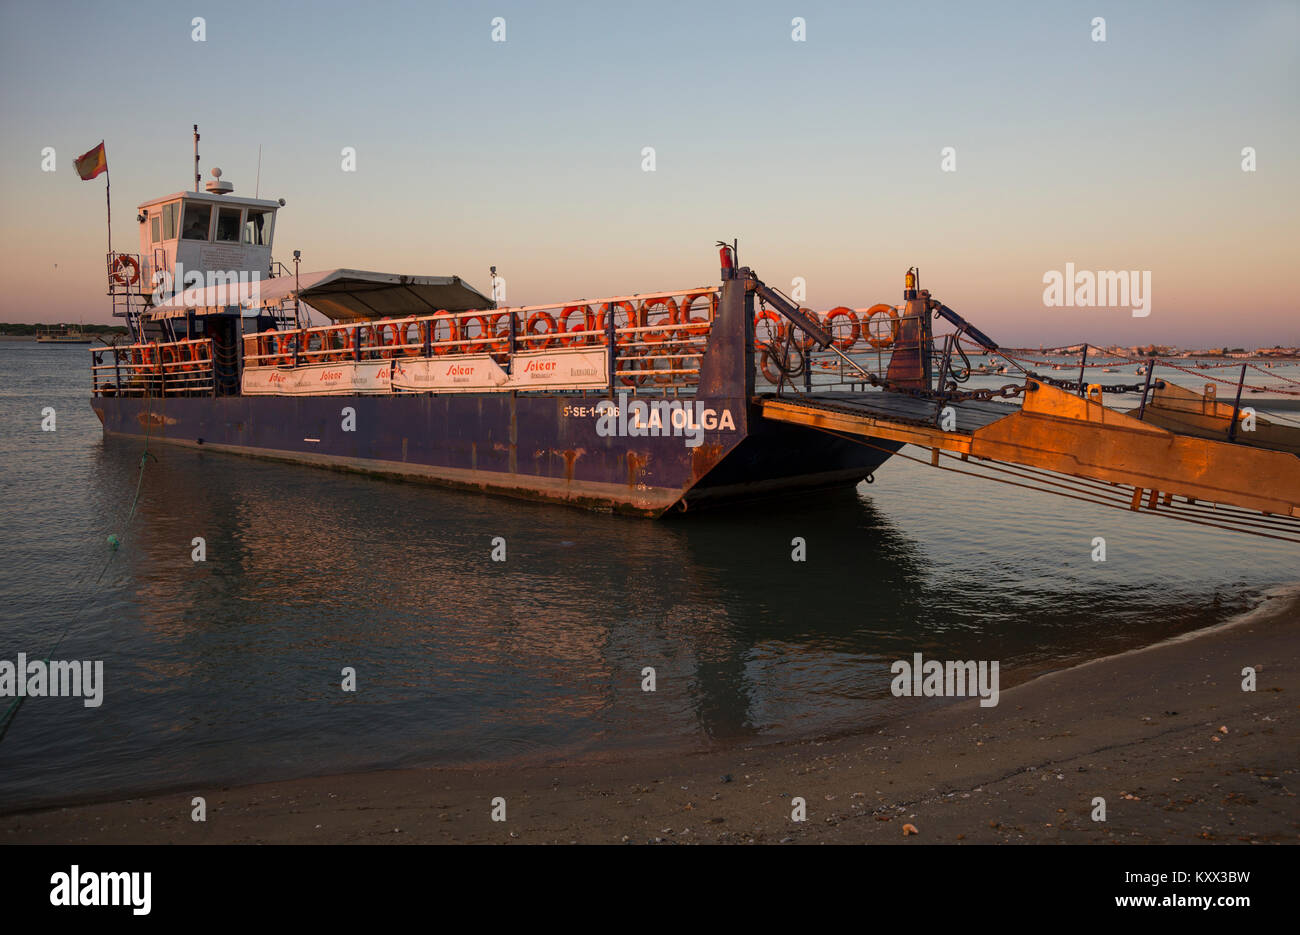 'La Olga' Coto Donana ferry, Sanlúcar de Barrameda, Spain Stock Photo